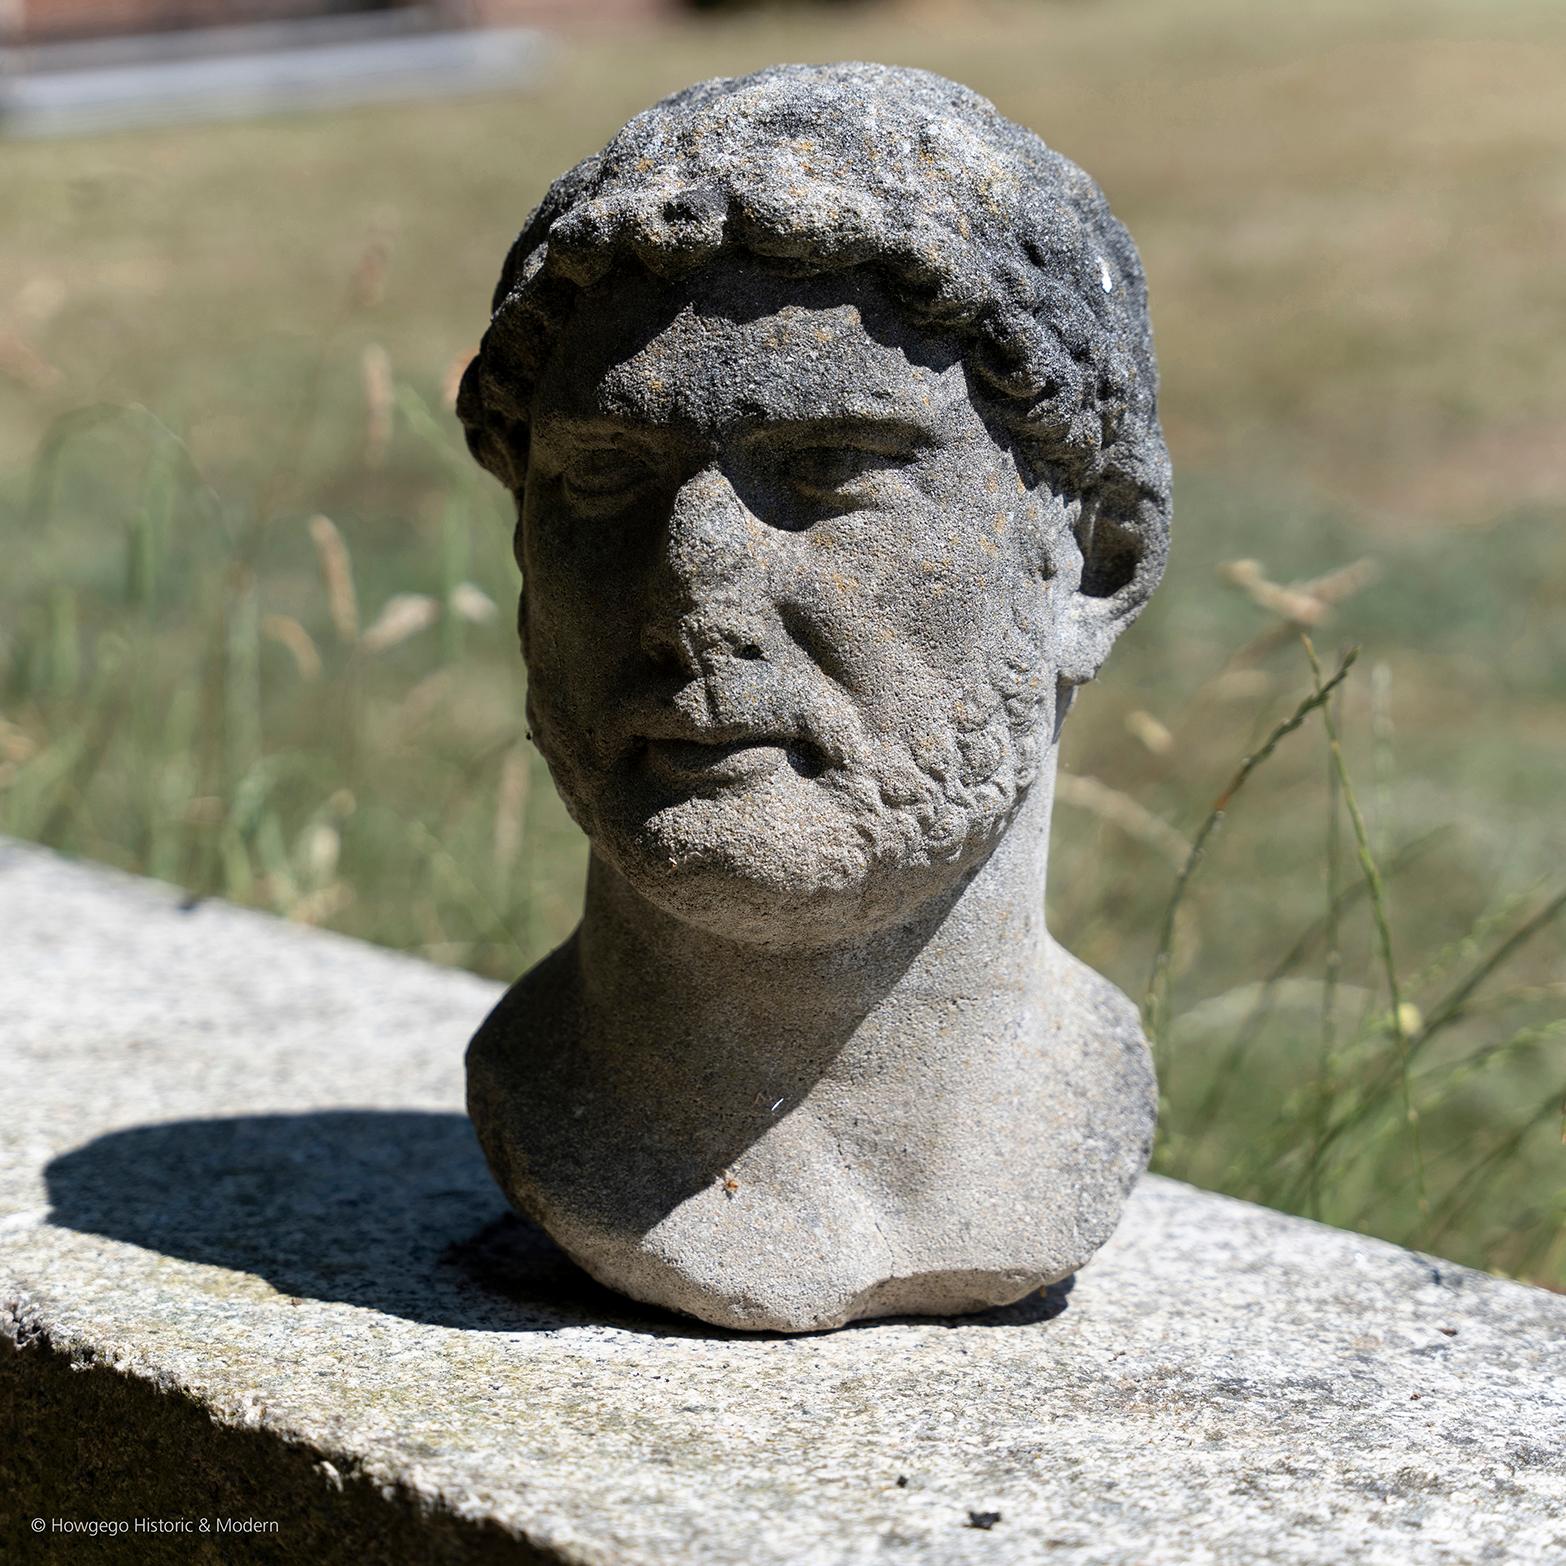 Après l'antiquité. Ce buste traduit le caractère de Brutus : son courage, sa force, sa puissance, sa noblesse, son honneur et sa conviction. 
Dimensions : hauteur 34 cm, 13,5